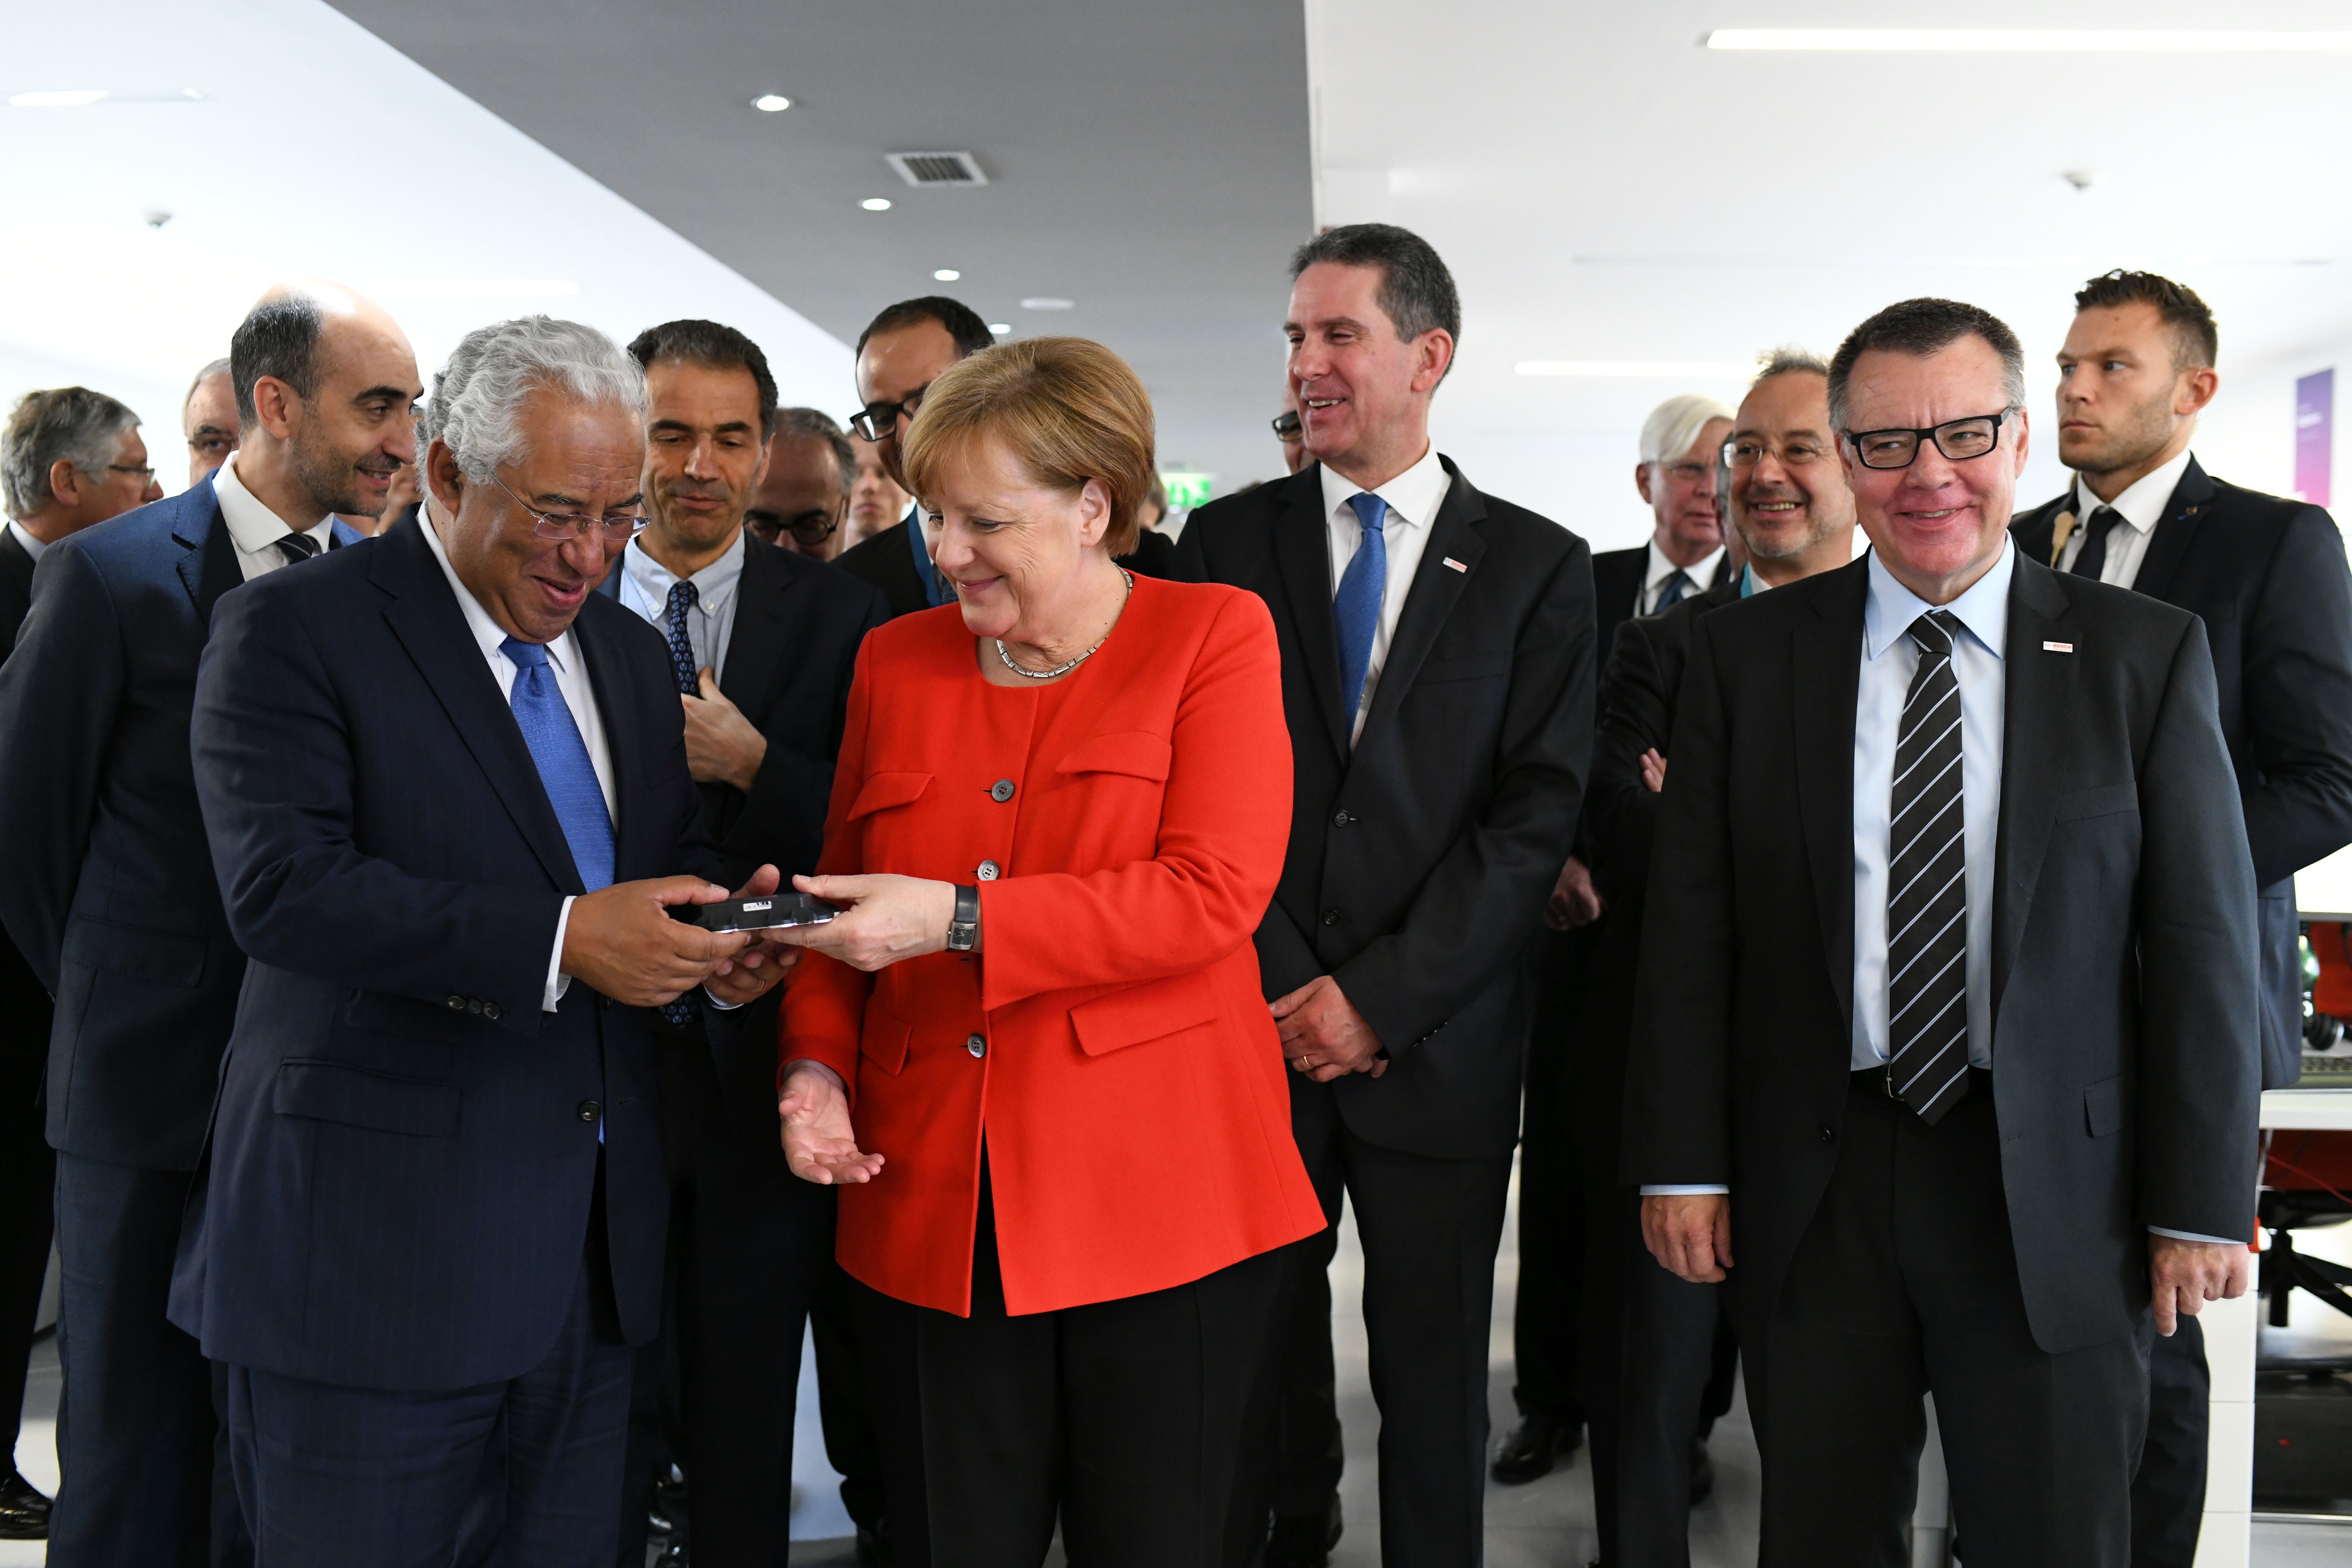 Politikprominenz bei Bosch: Bundeskanzlerin Merkel und Premier Costa eröffnen Tech Center in Portugal